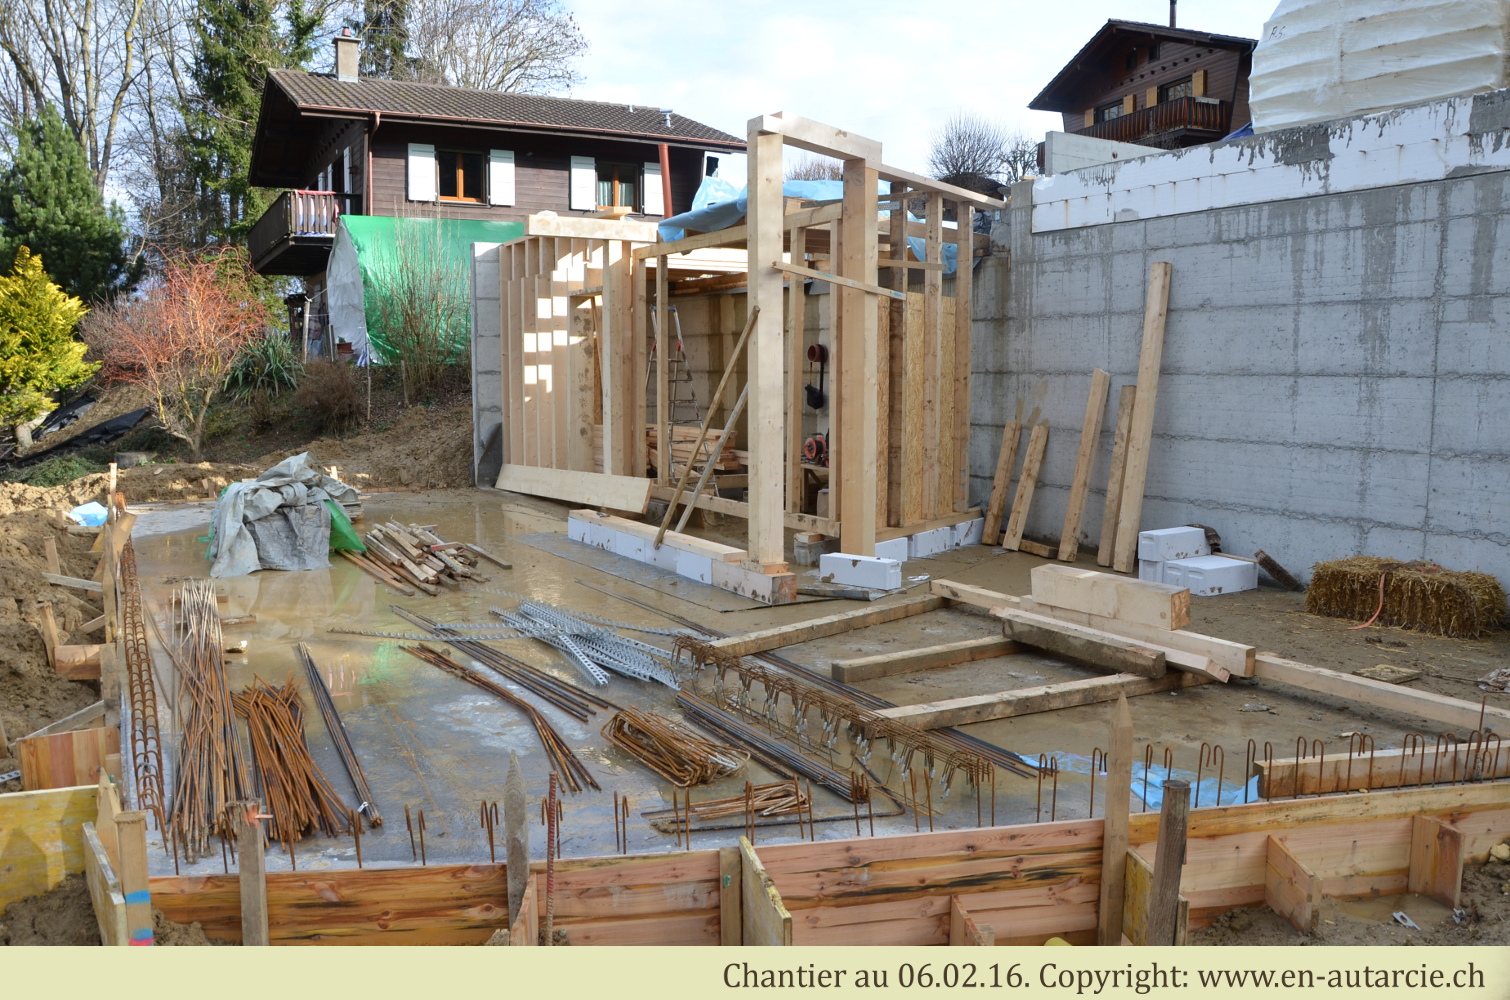 06.02.12 Rangement du chantier et préparation des structures en bois de la maison.